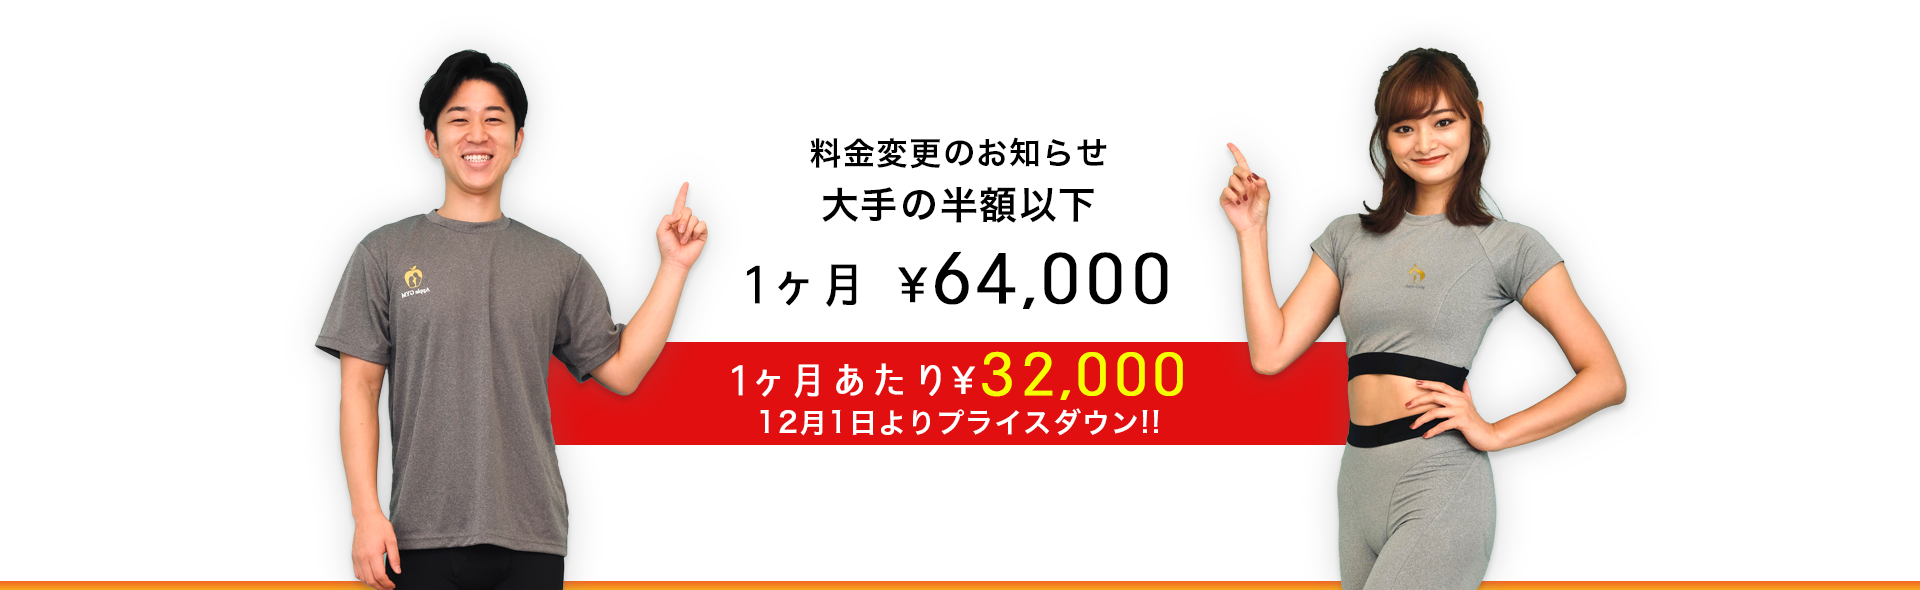 料金変更のお知らせ大手の半額以下1ヶ月あたり¥32,000 12月1日よりプライスダウン!!